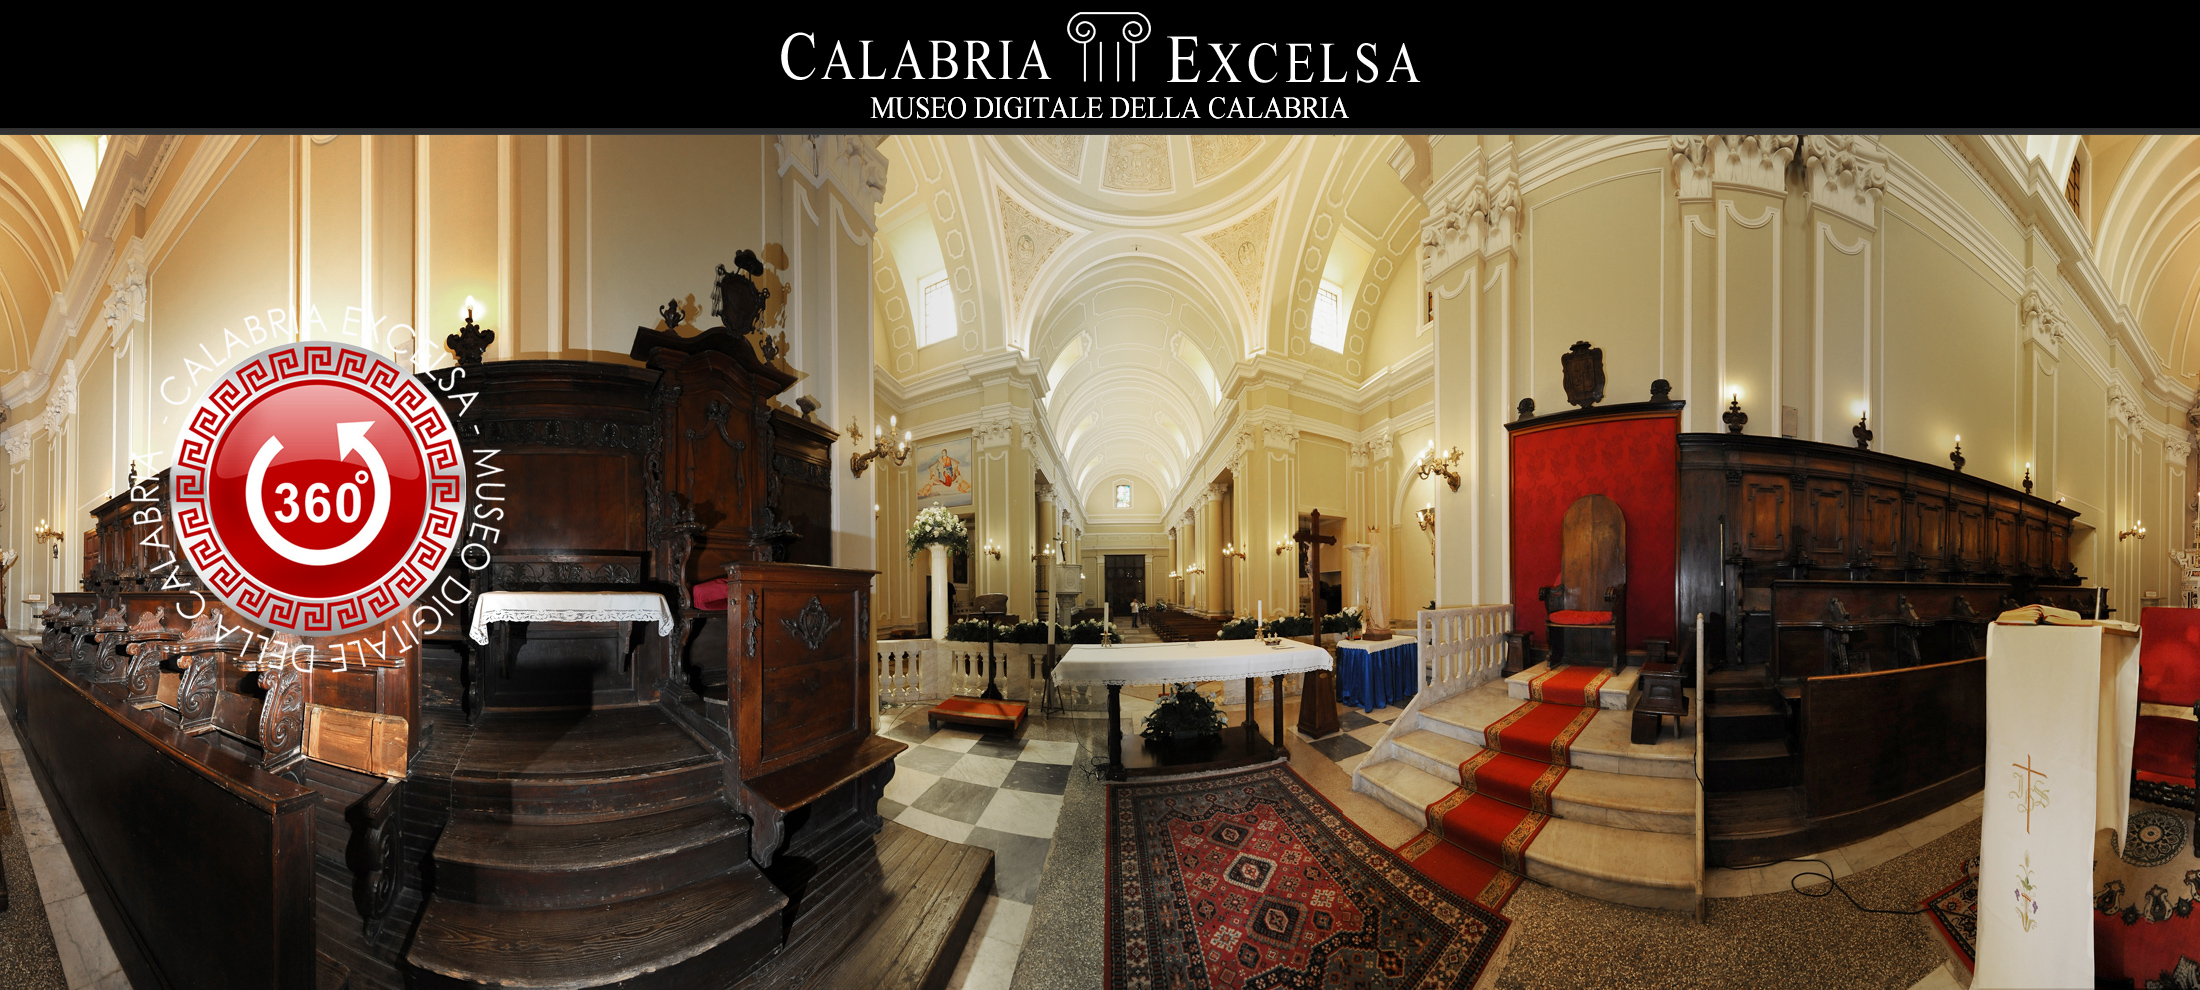 Museo digitale della Calabria - Cattedrale di Nicotera